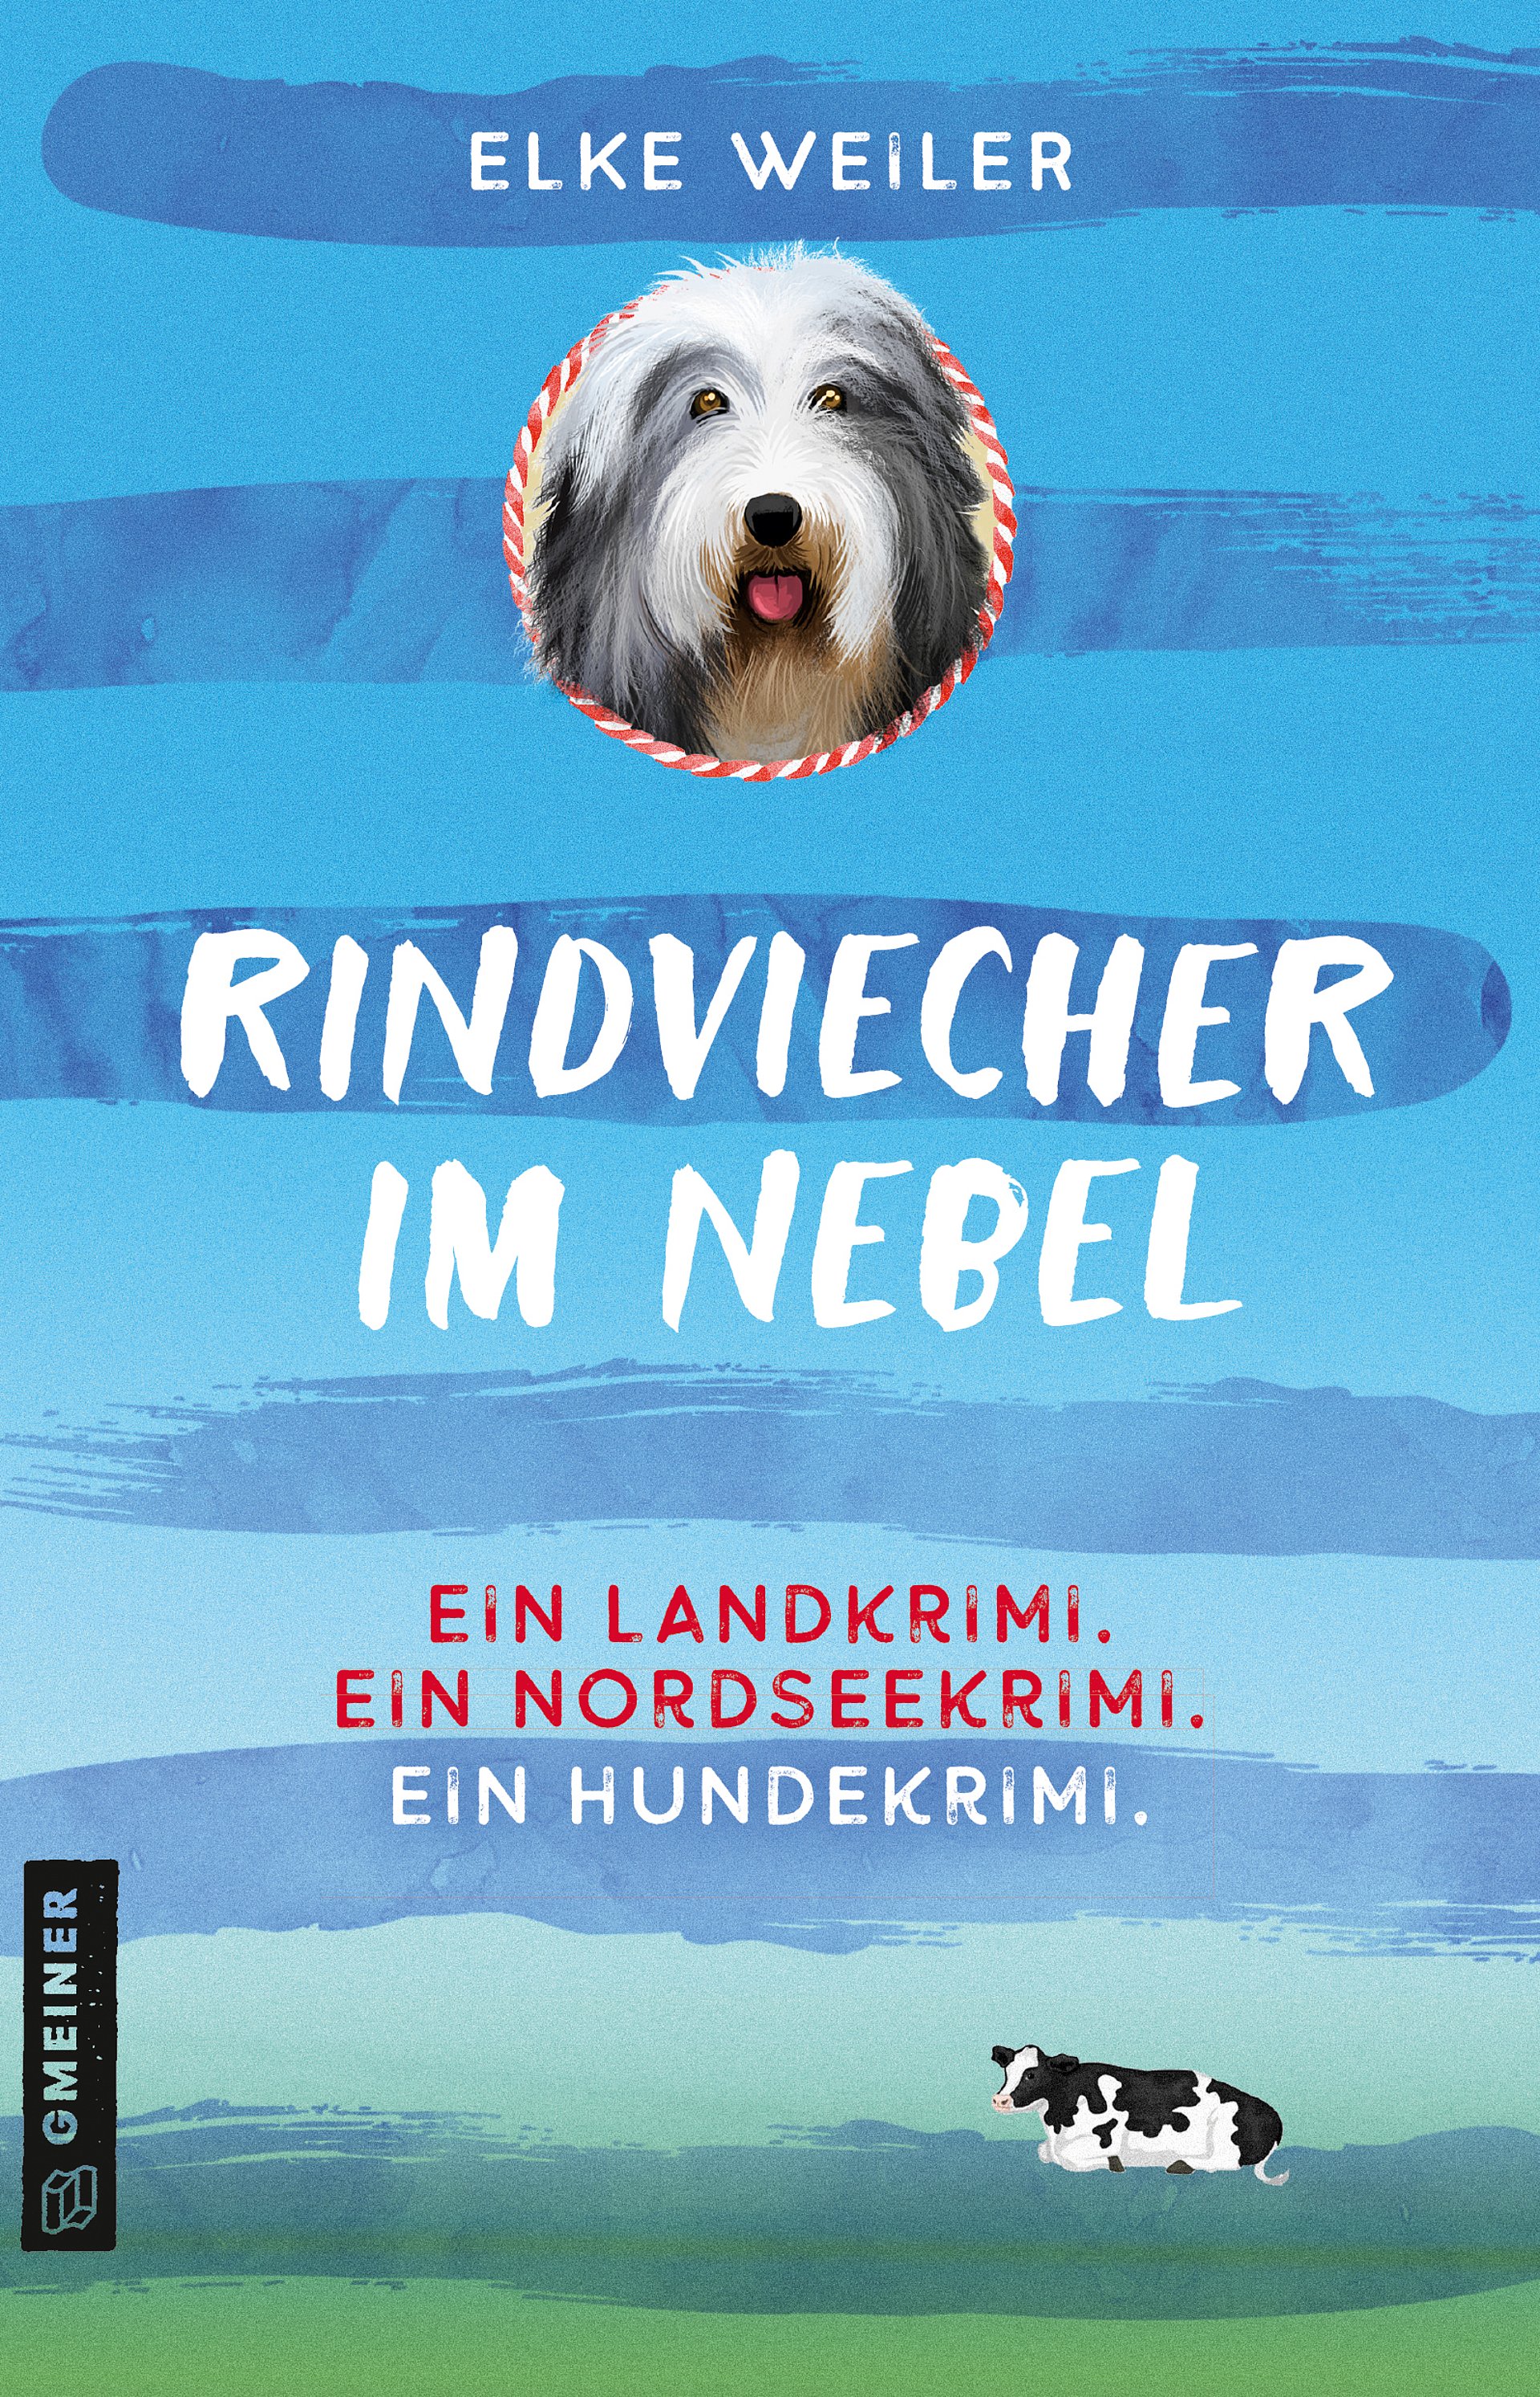 Buchtitel Rindviecher im Nebel von Elke Weile, erschienen im GMEINER Verlag